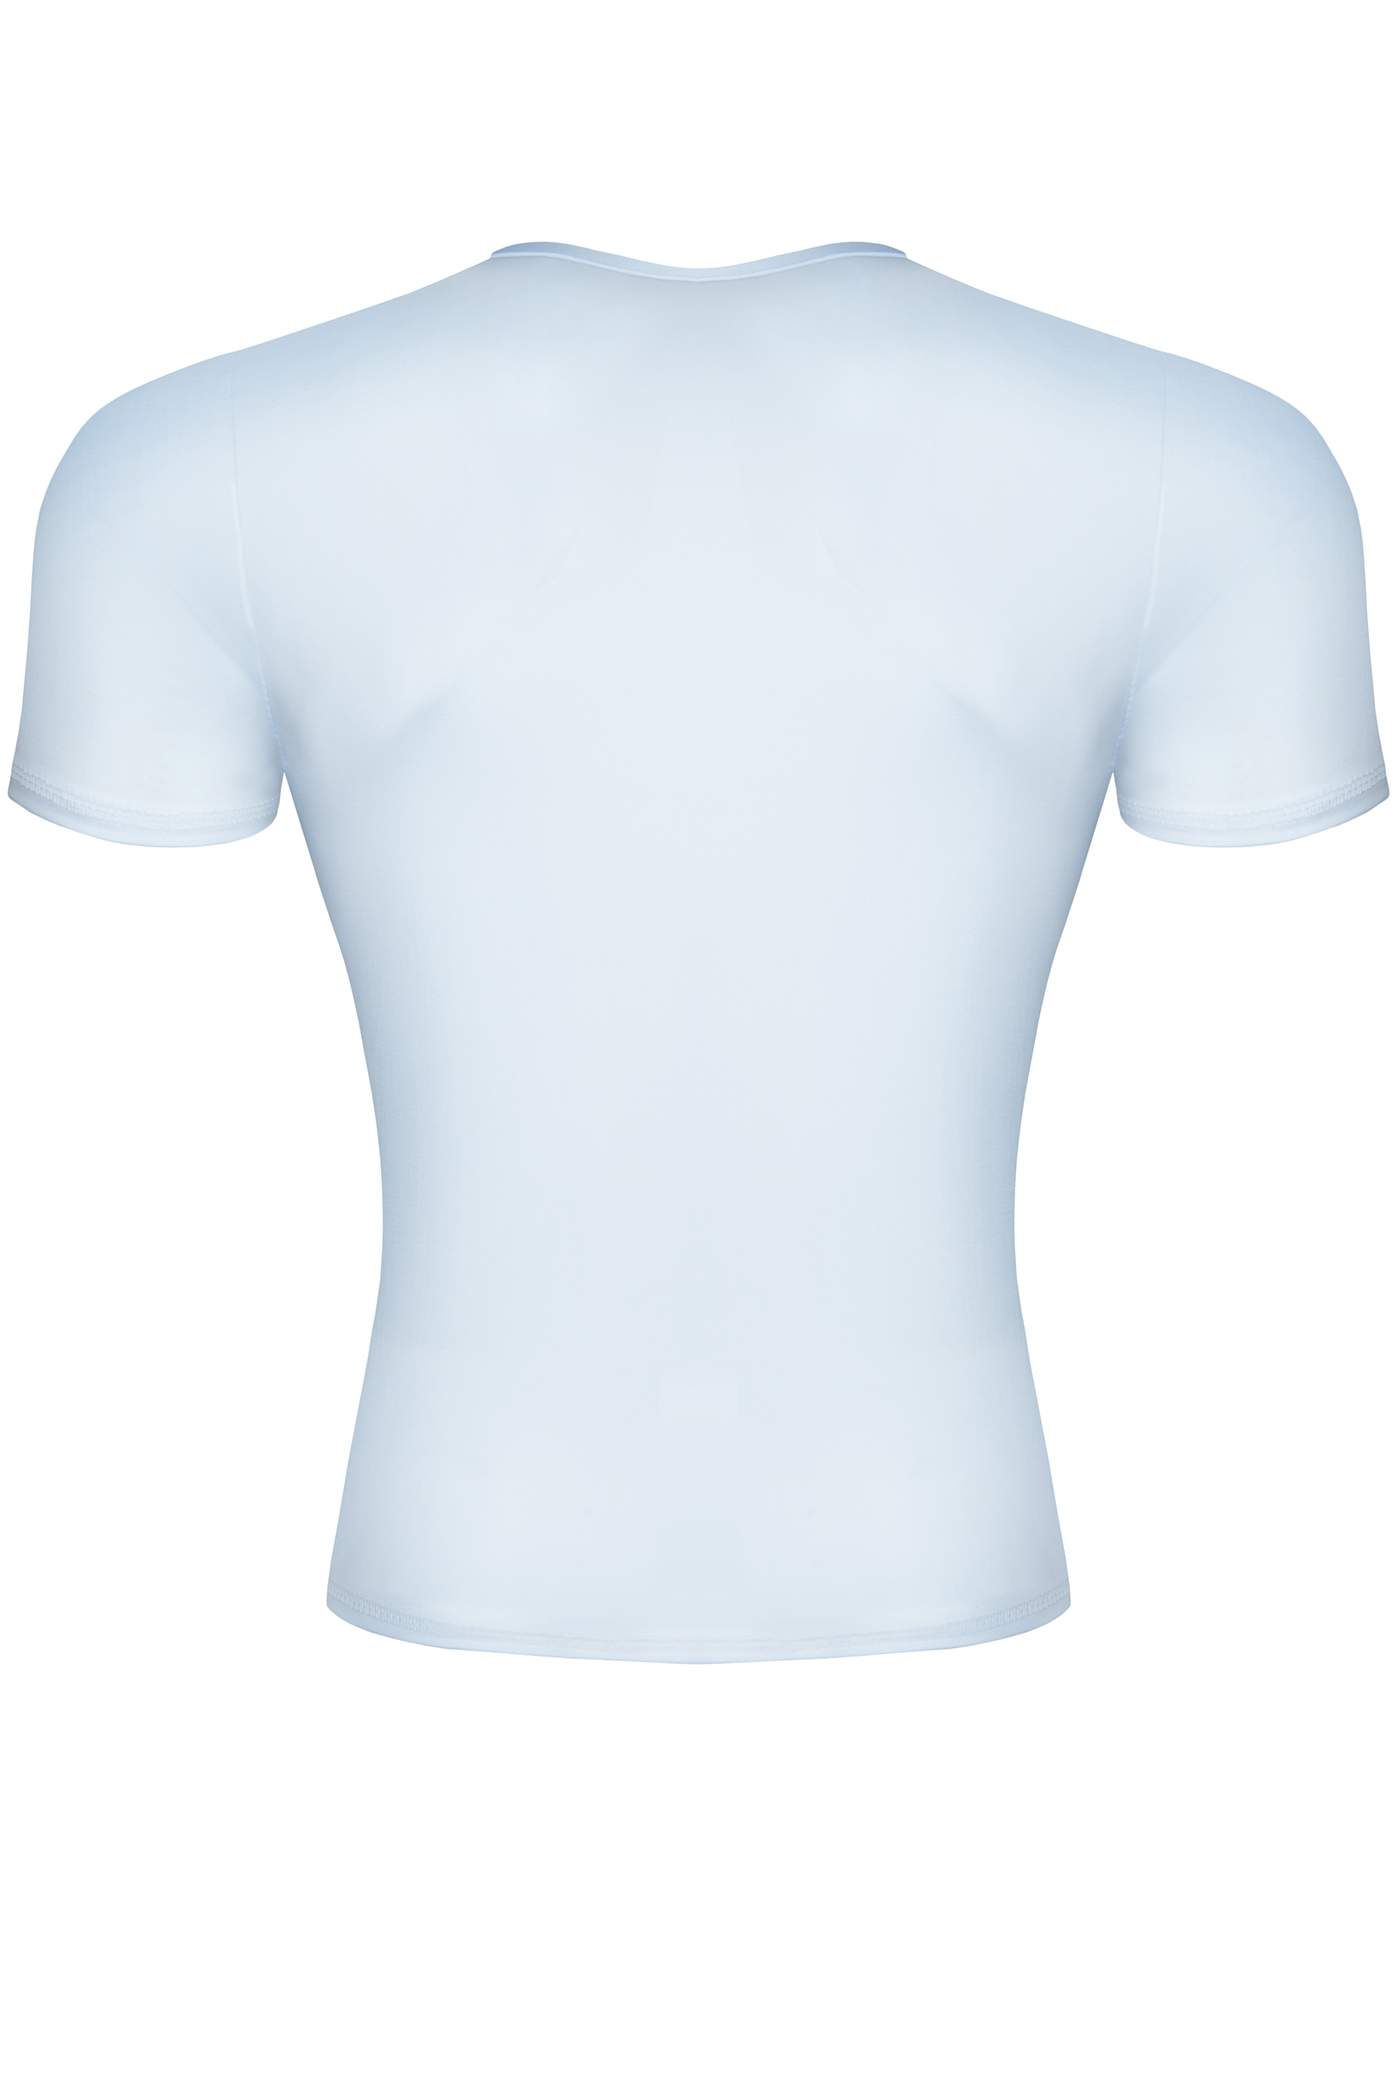 Męska koszulka z wetlooka w białym kolorze wycięta w serek